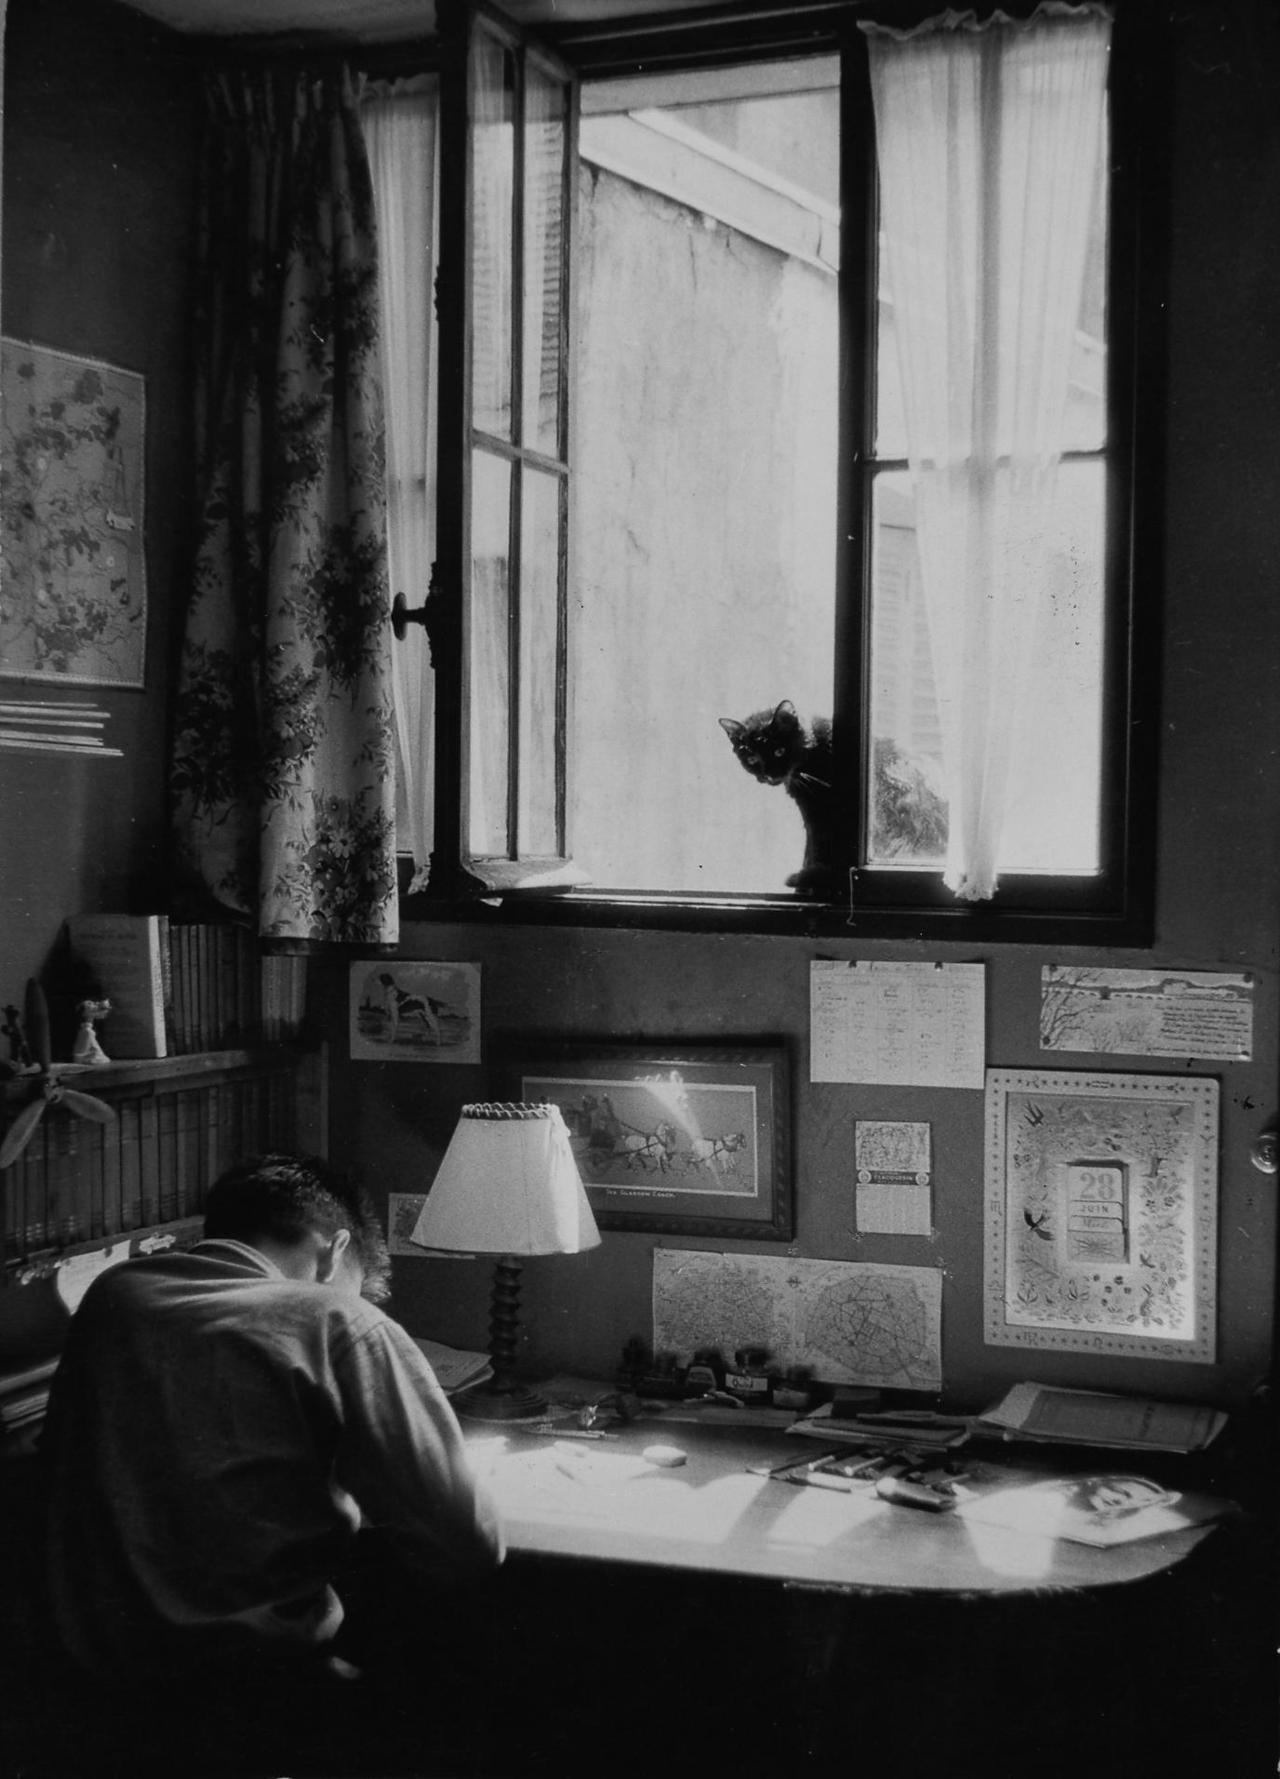 undr:
“Willy Ronis, Vincent et le chat, Paris, 1955
”